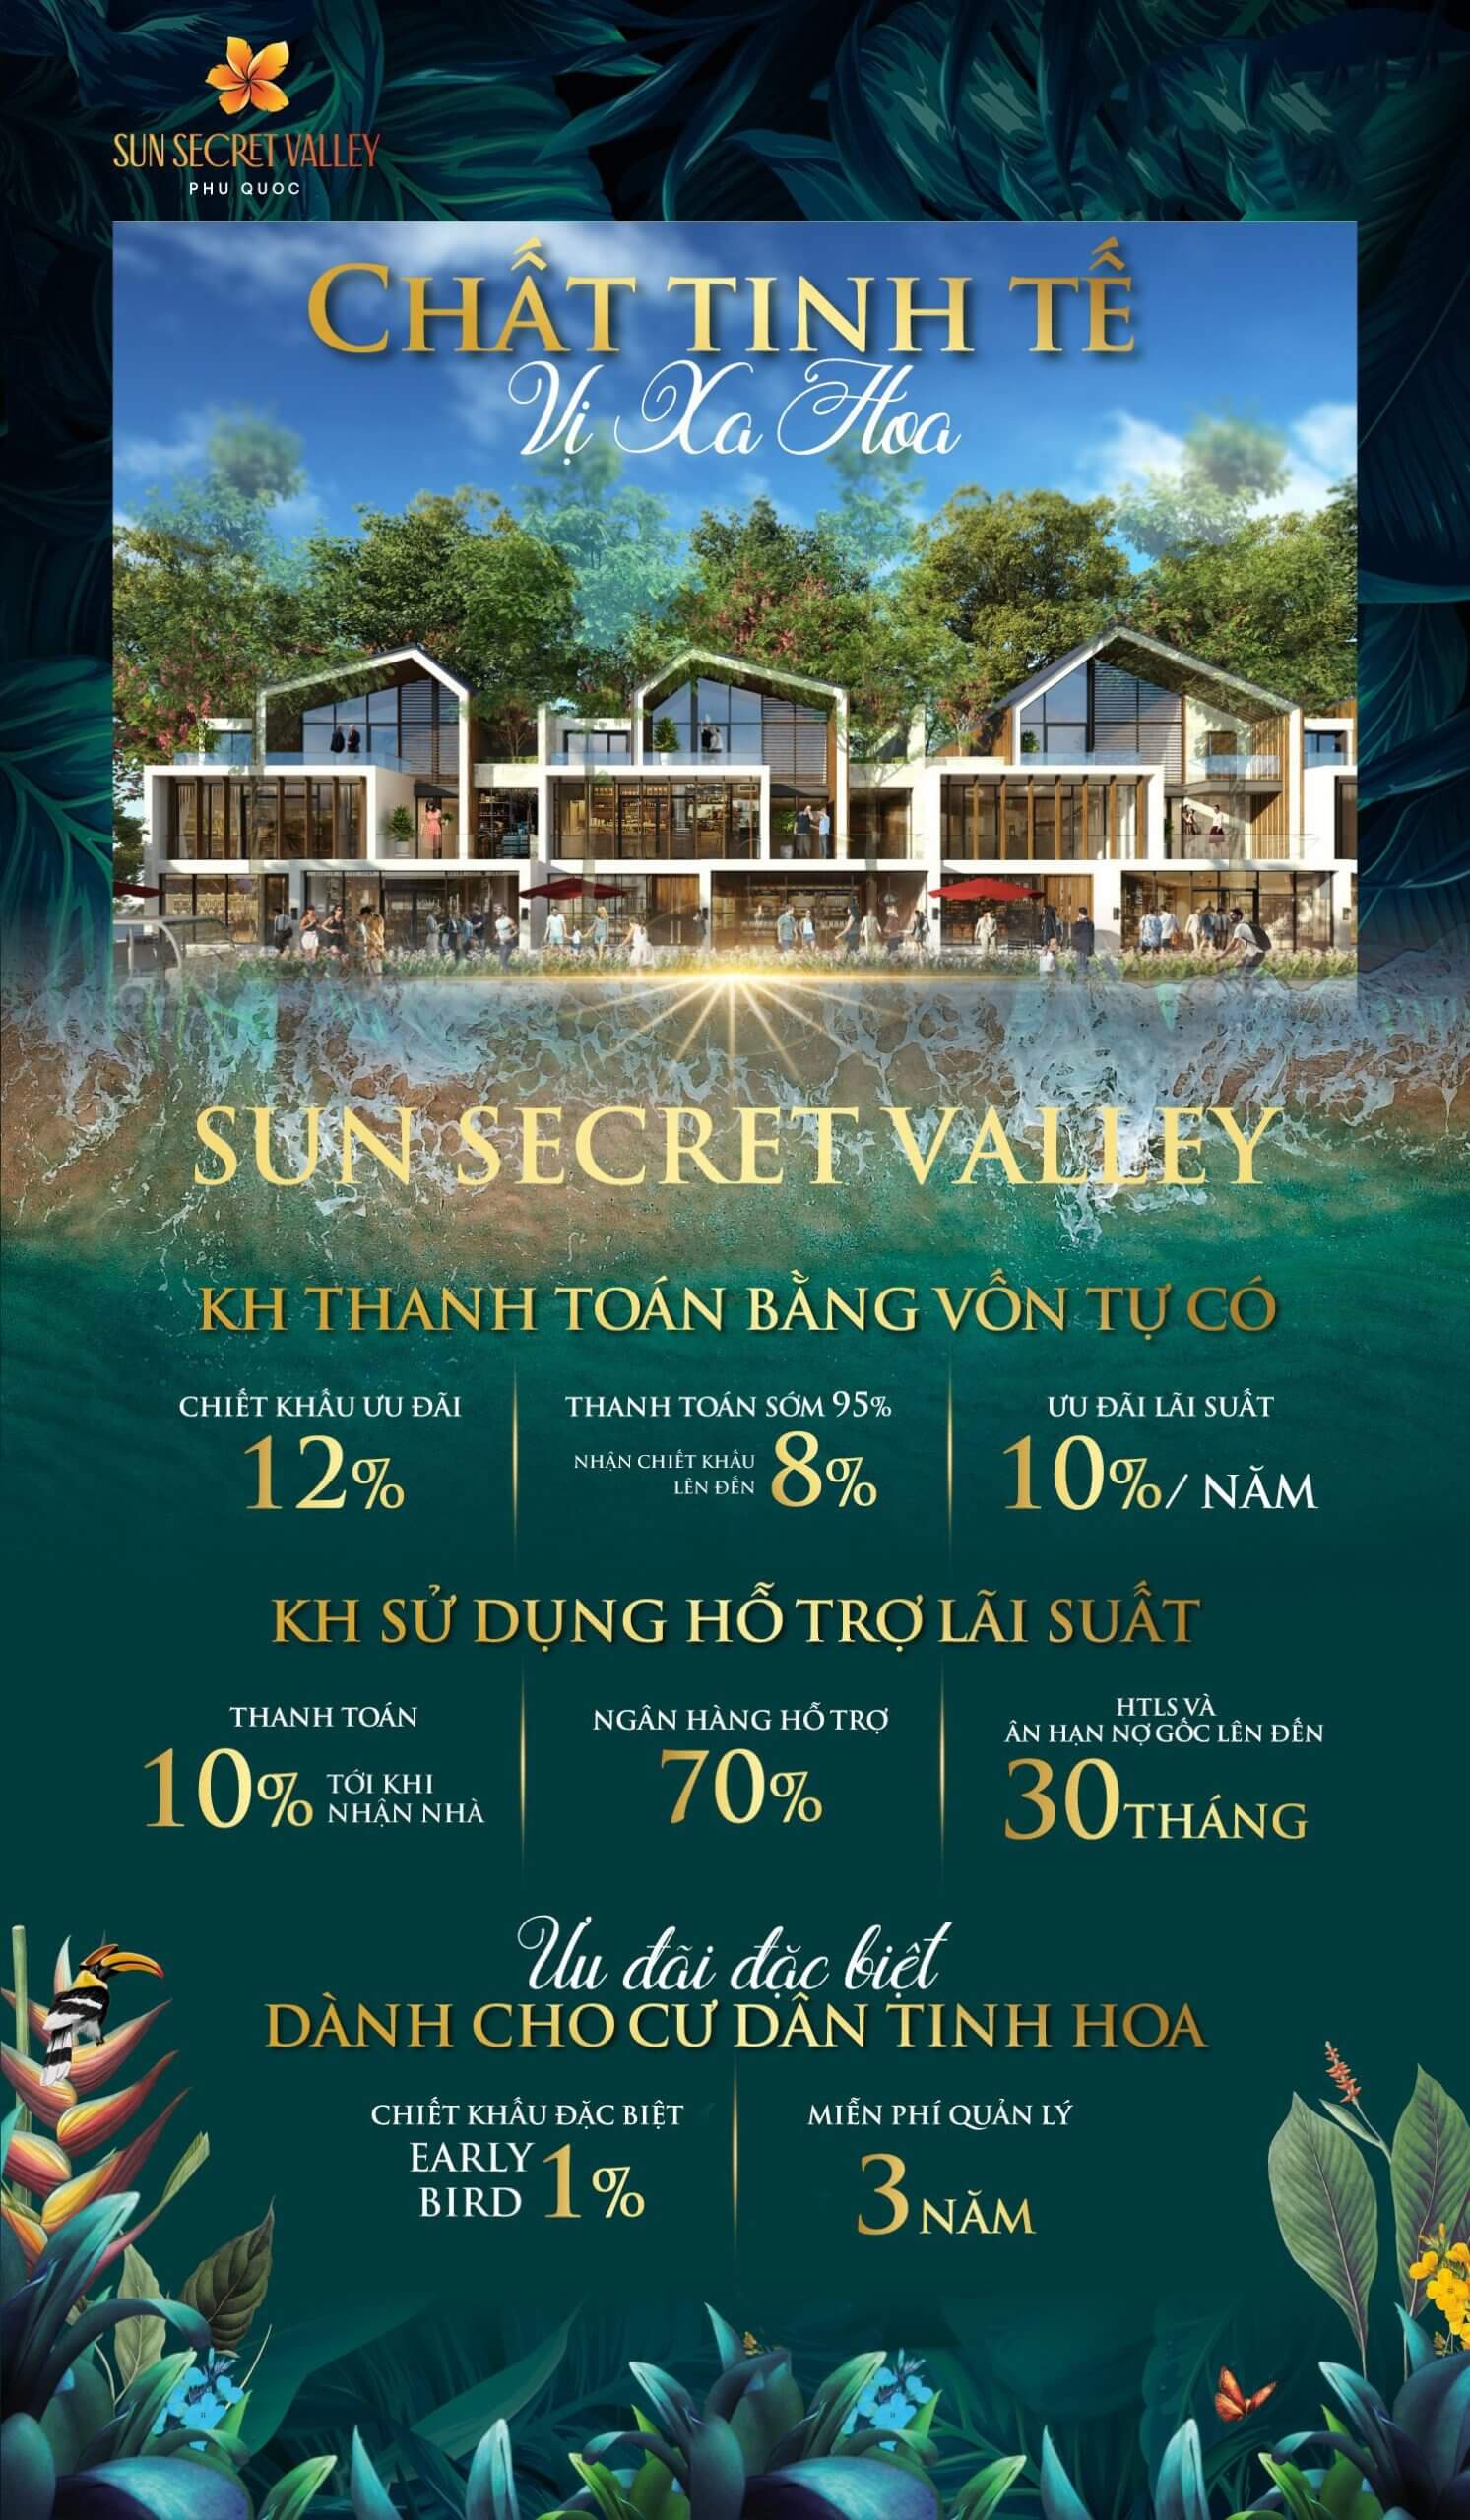 Chính sách bán hàng dự án Sun Secret Valley Phú Quốc